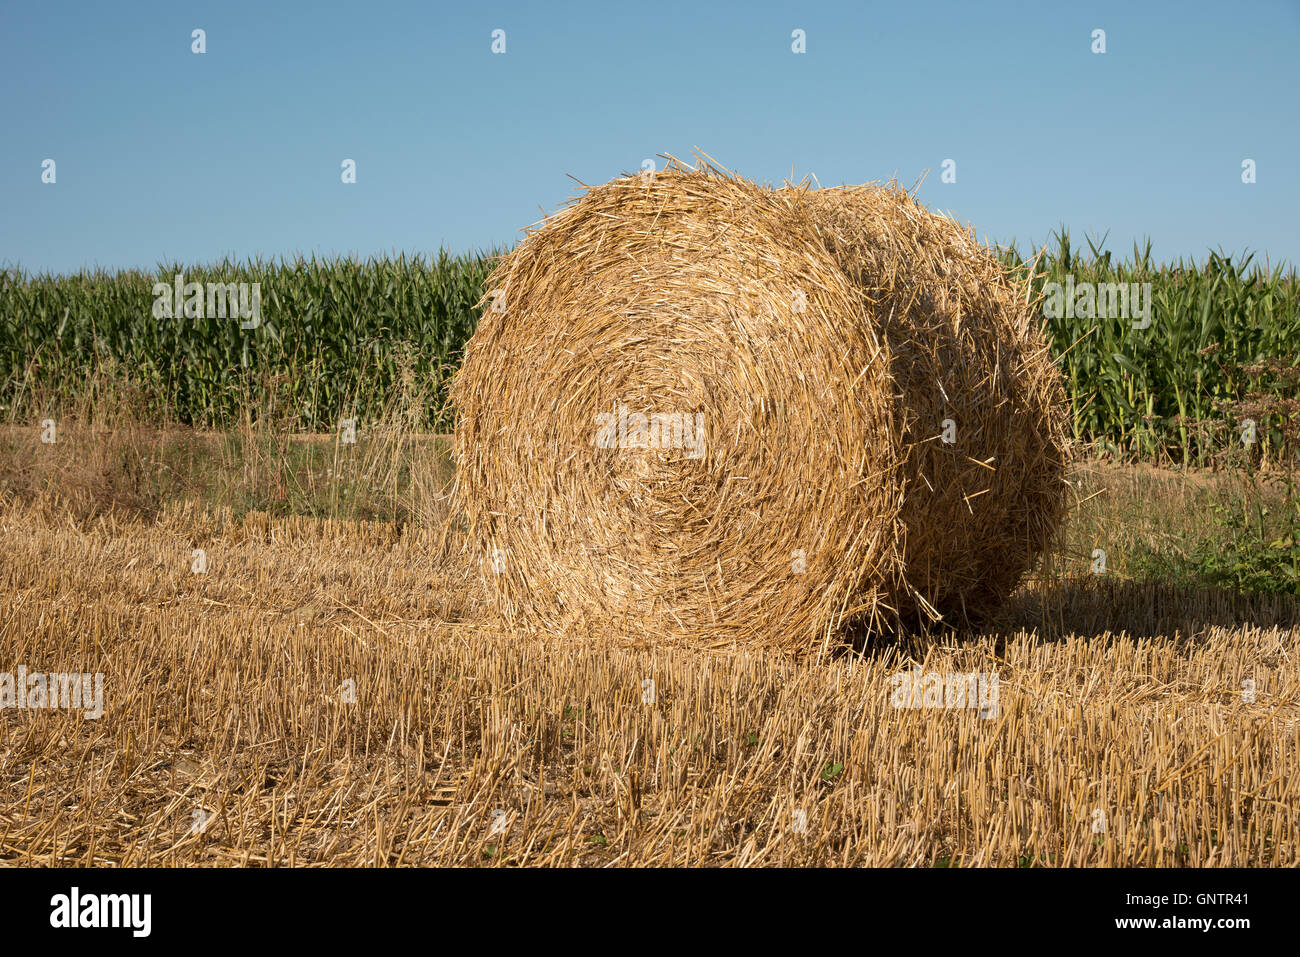 Normandie Frankreich - eine Runde Strohballen auf einem Feld am Alencon Frankreich Stockfoto